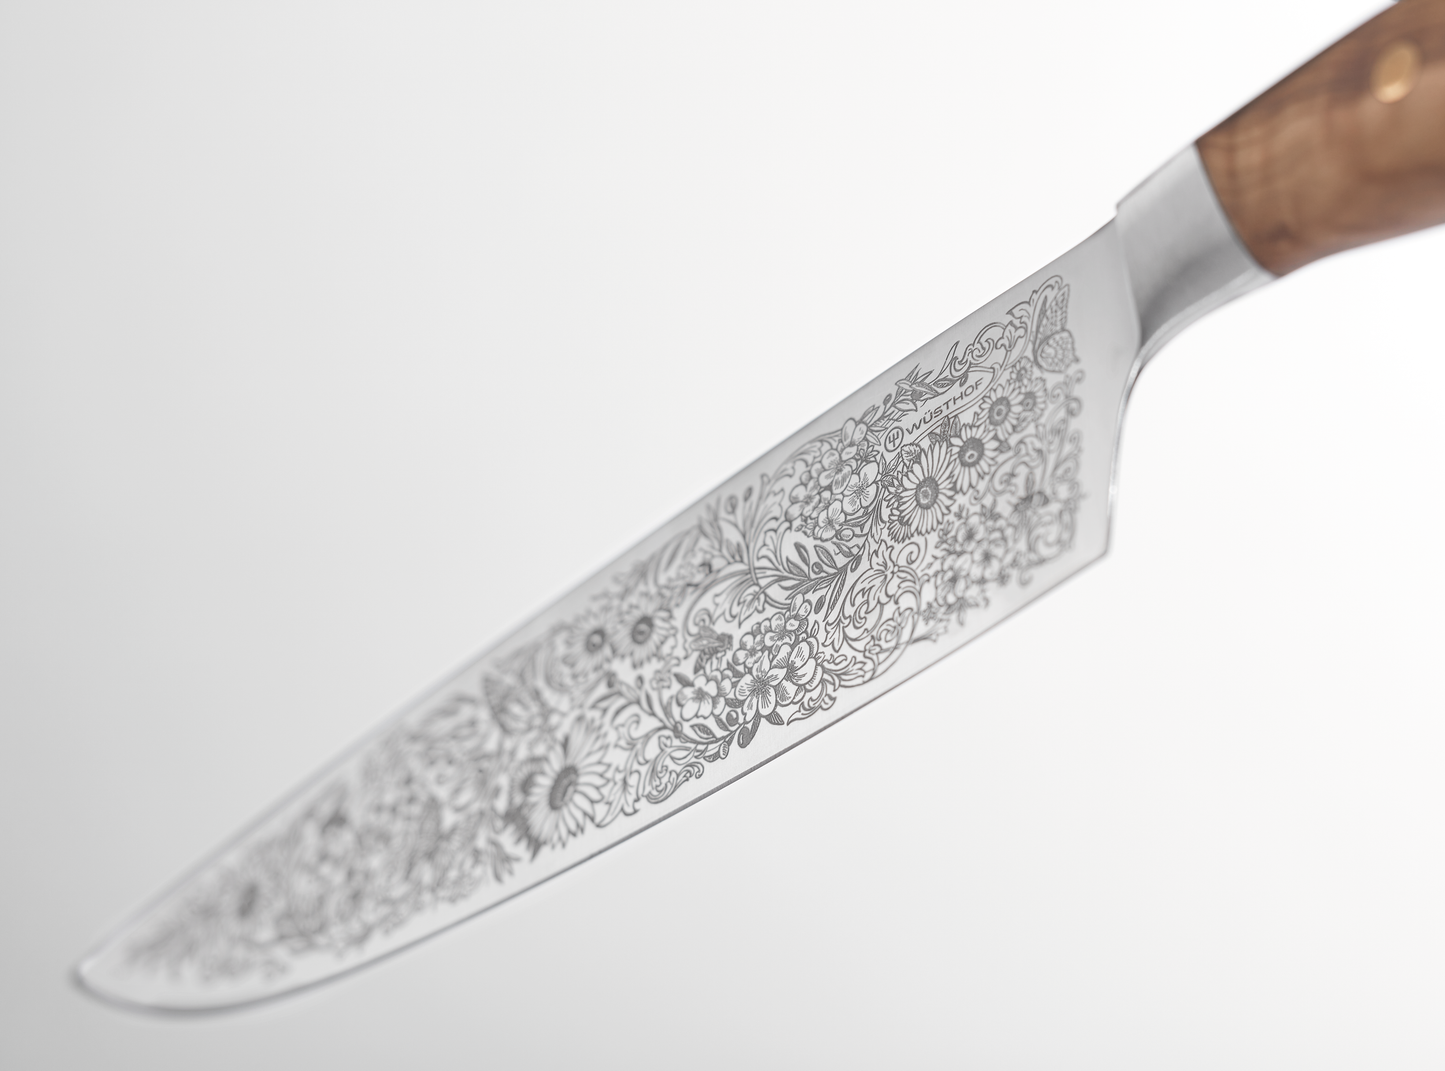 Amici 1814 Couteau de chef - Édition limitée 20 cm